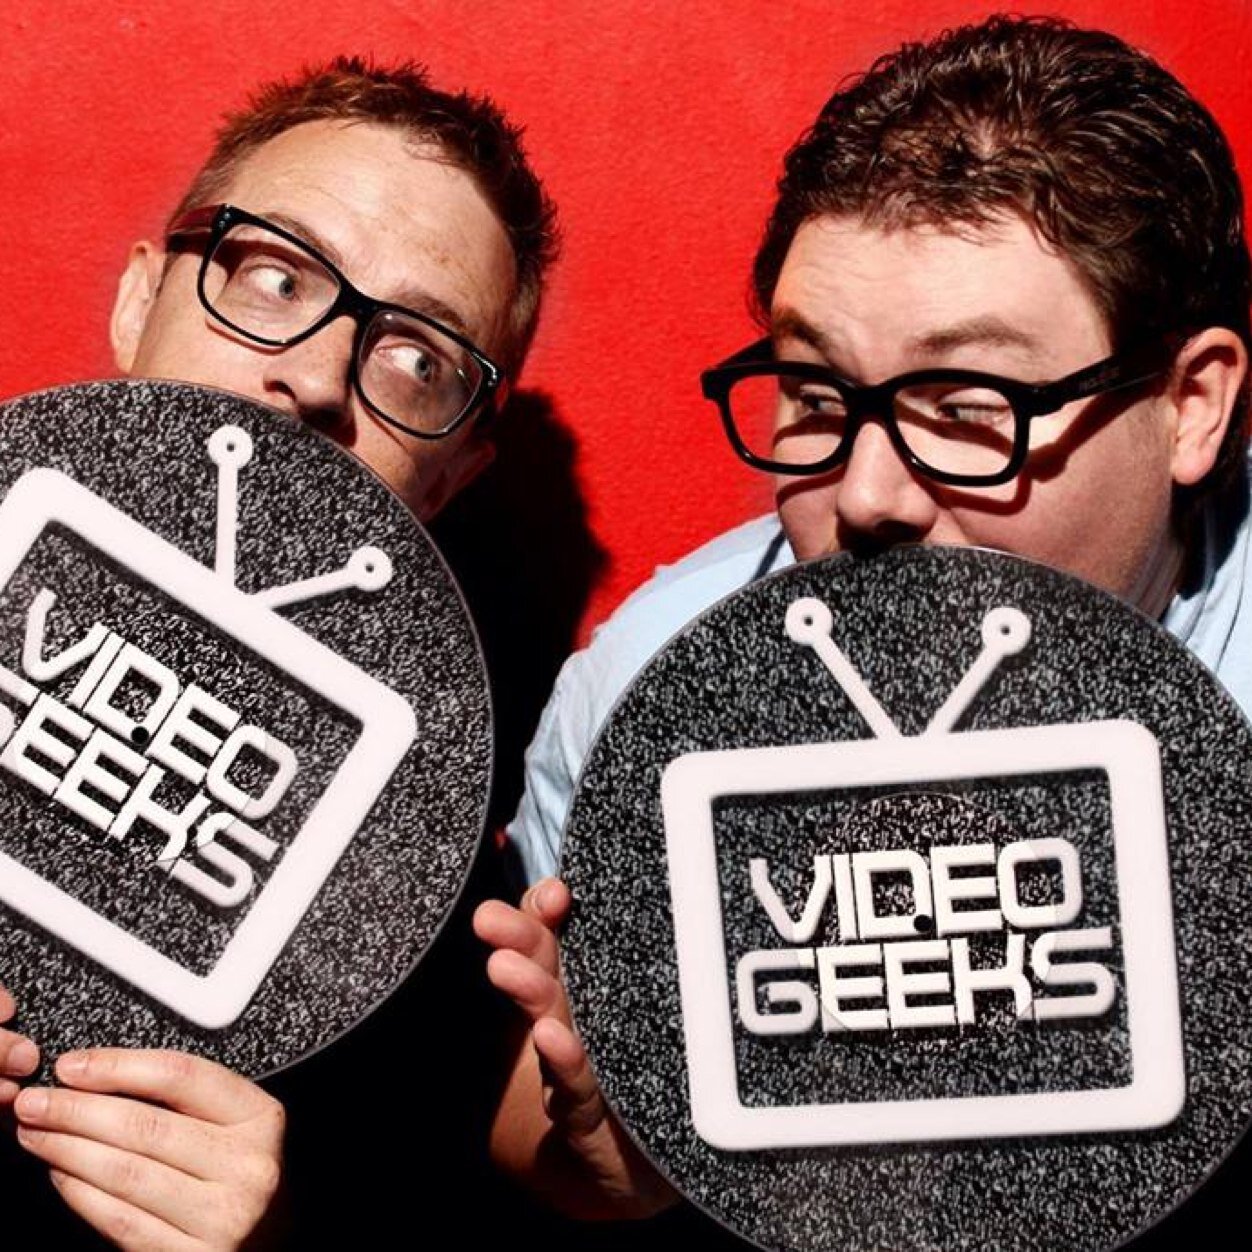 Video Geeks